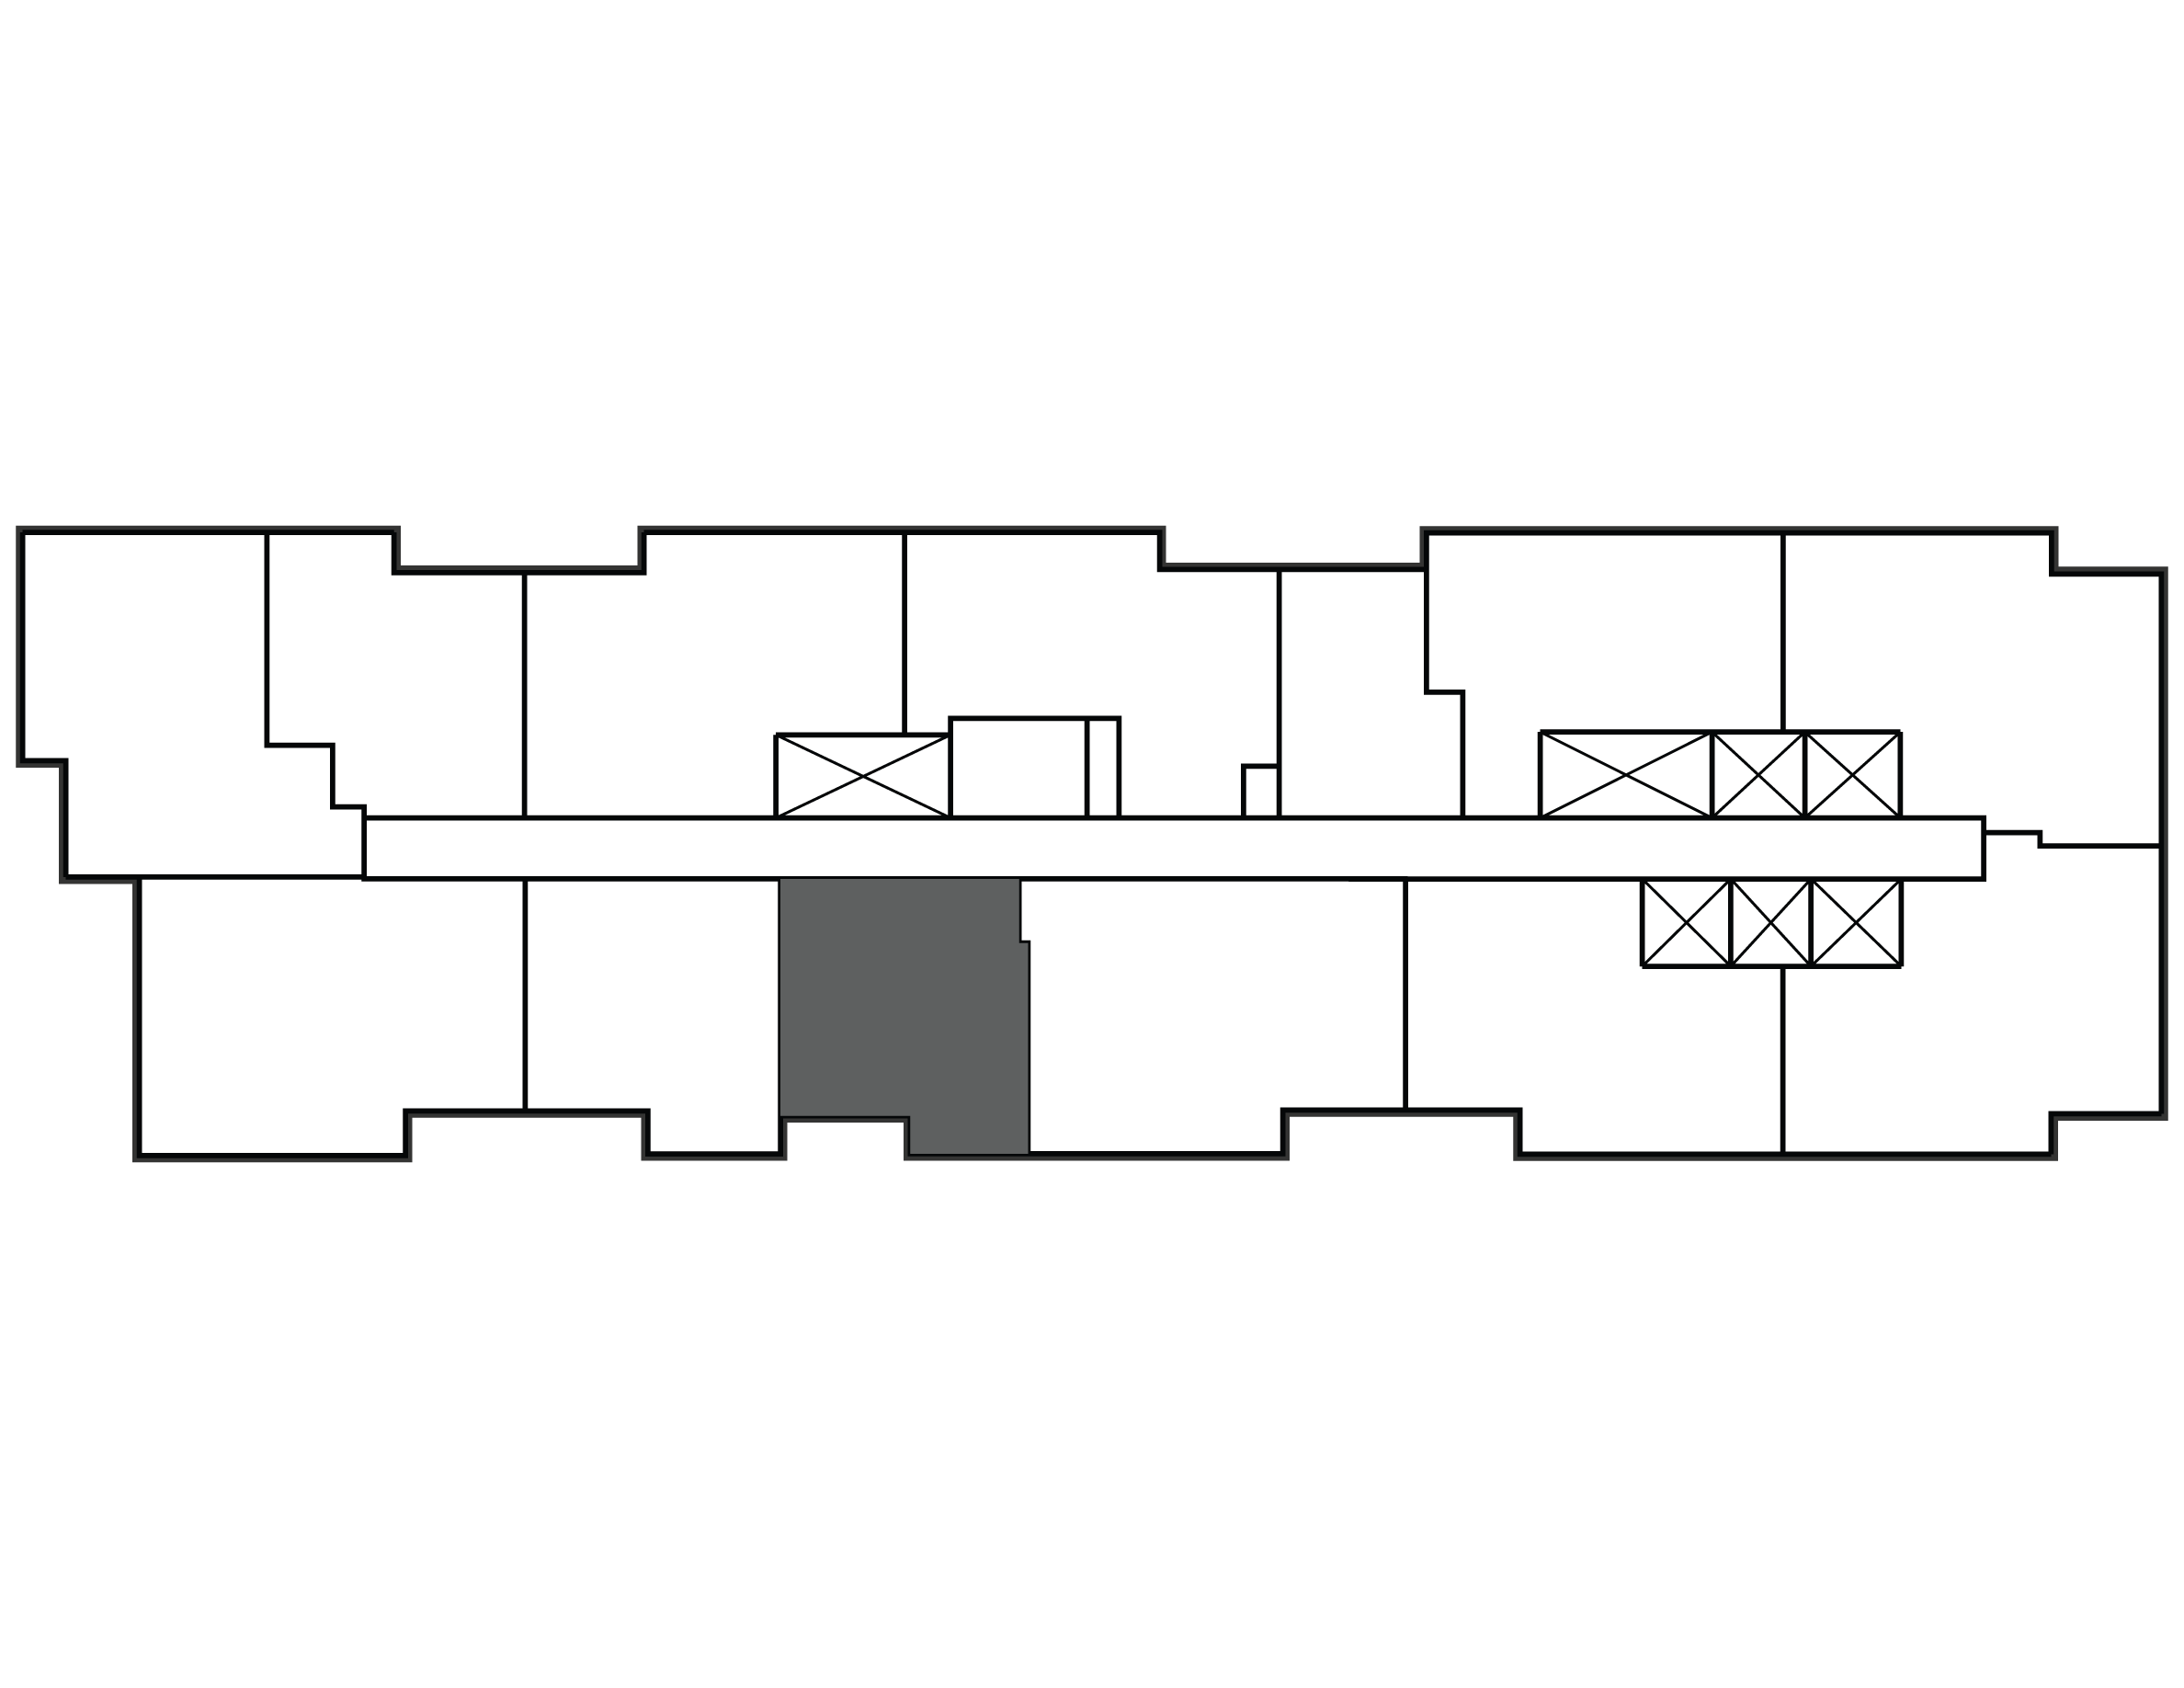 Key plan image of apartment 2804